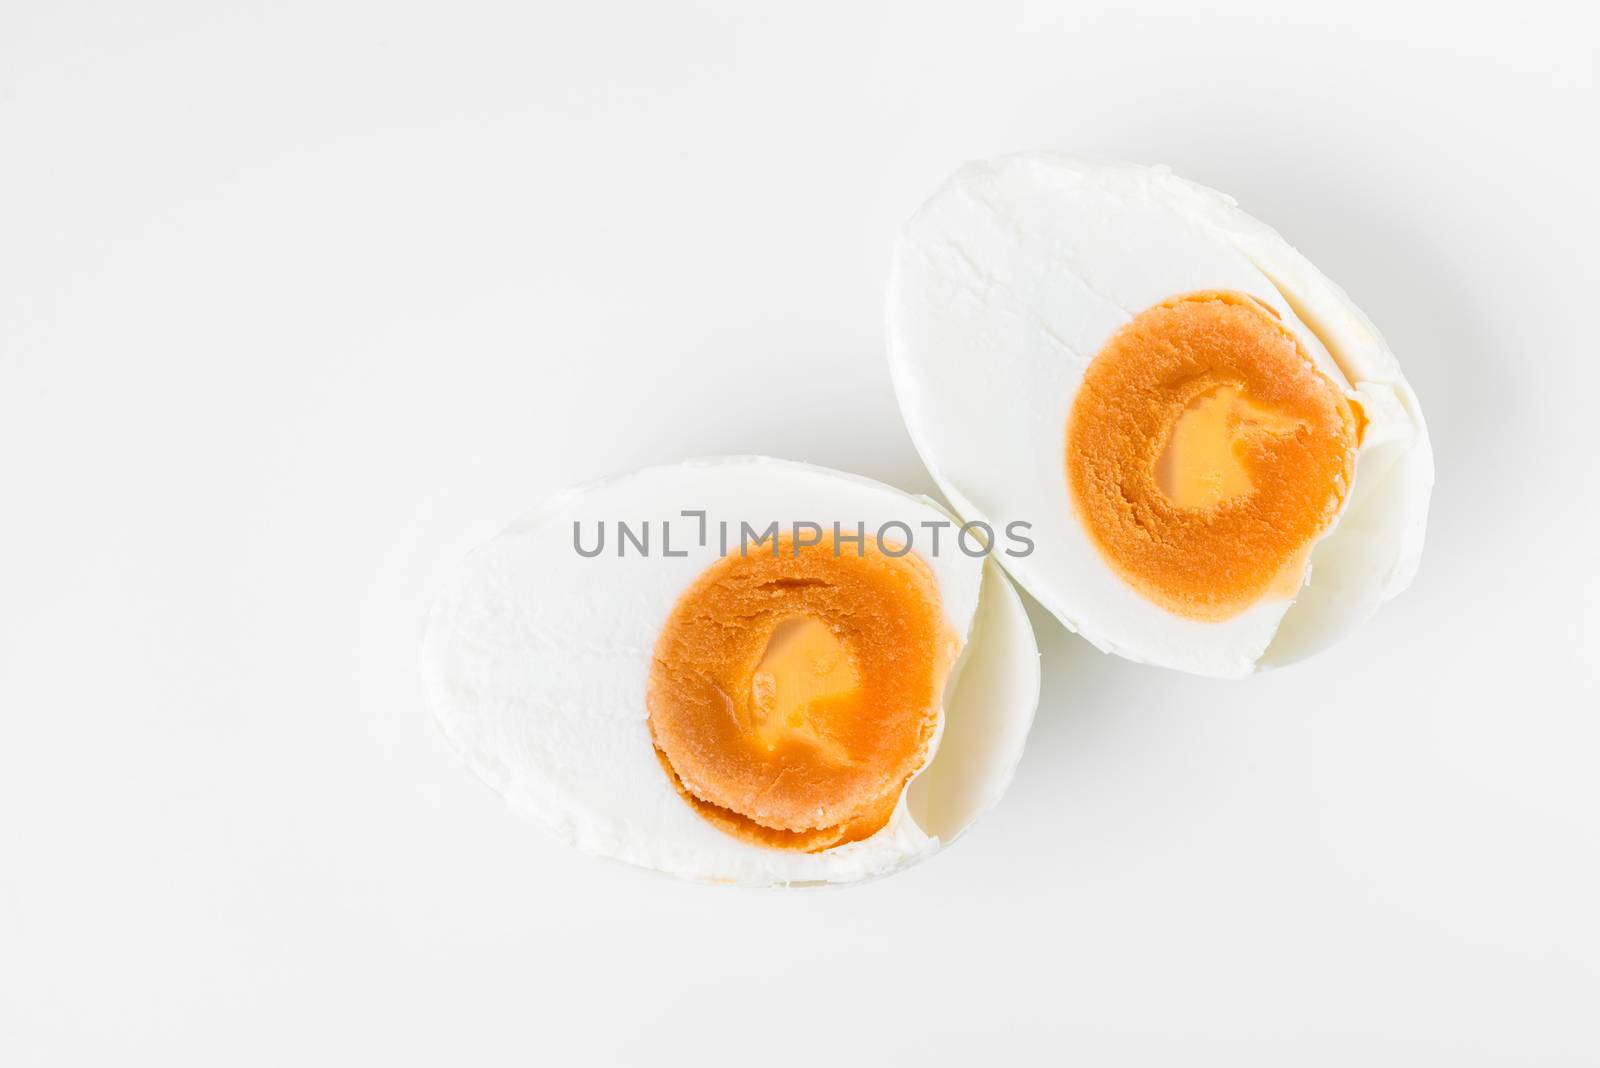 salted egg by antpkr